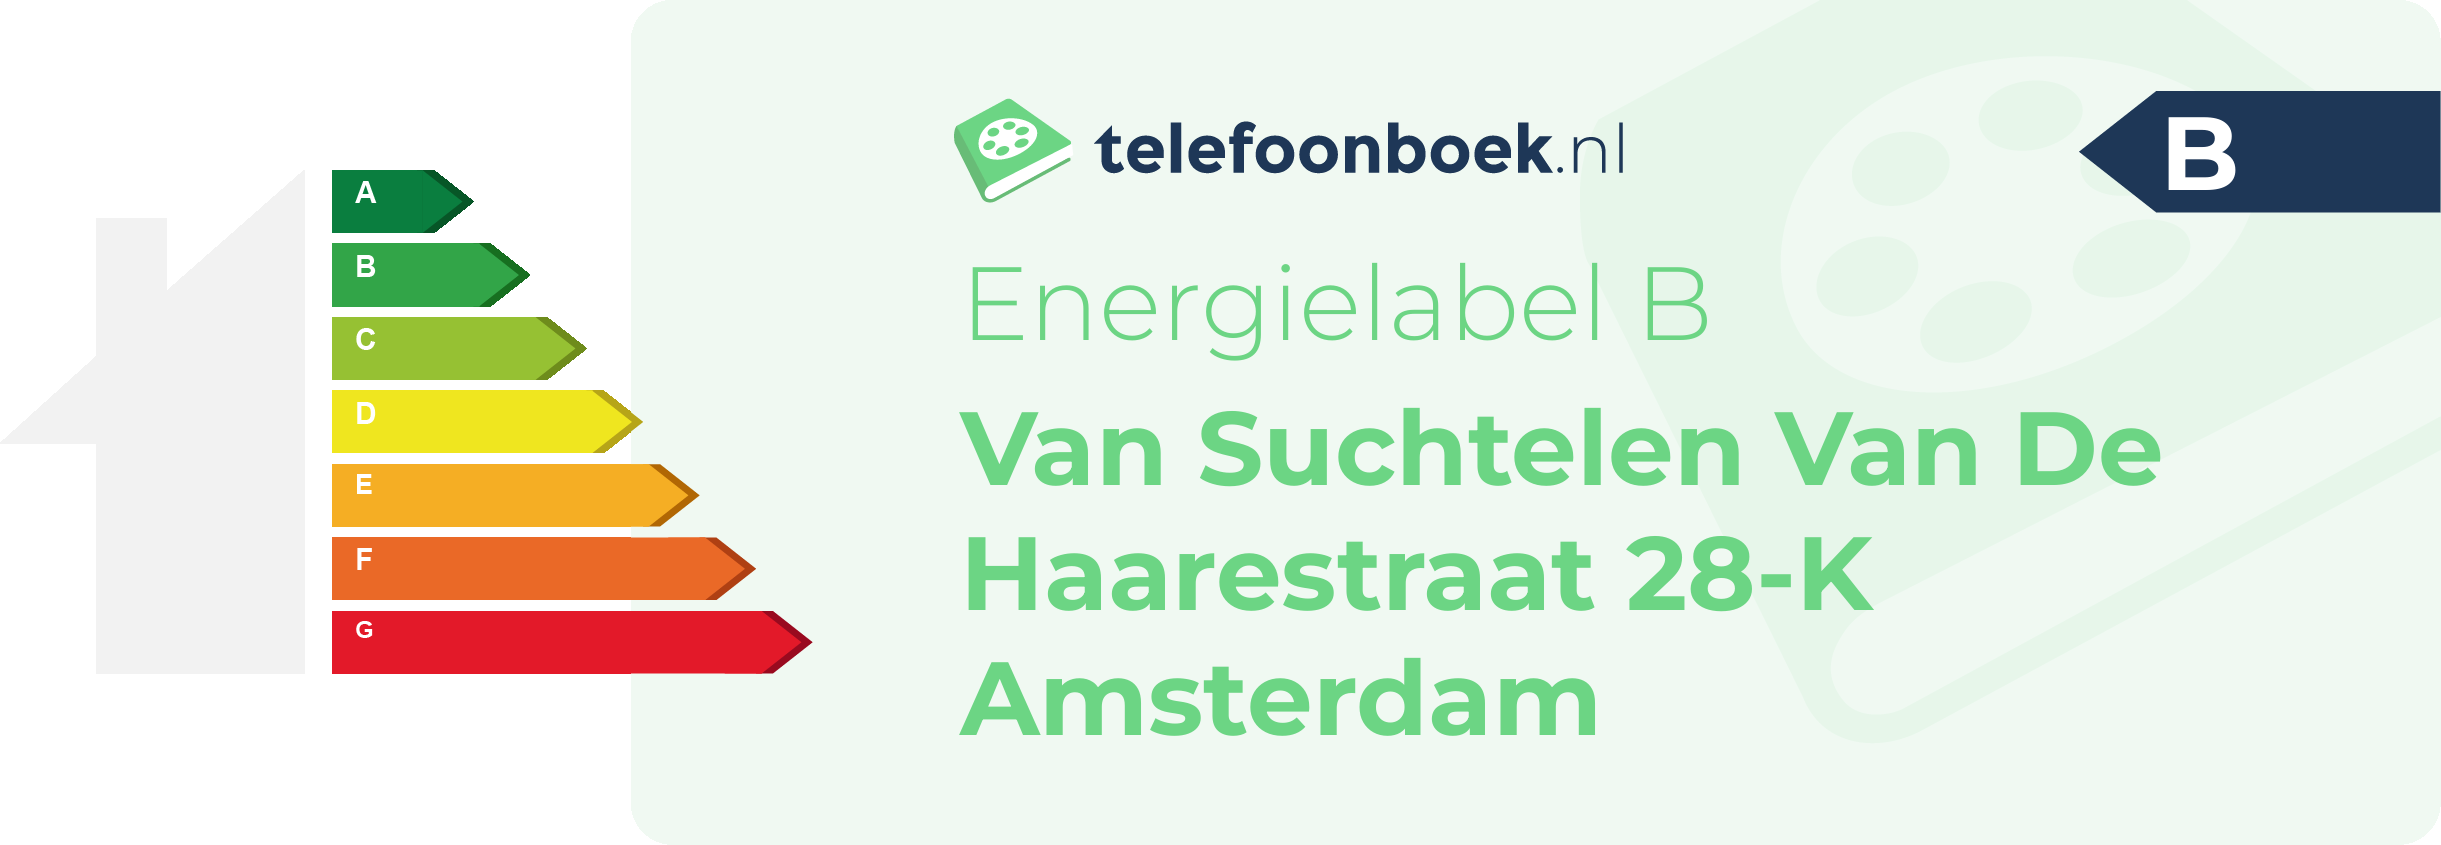 Energielabel Van Suchtelen Van De Haarestraat 28-K Amsterdam